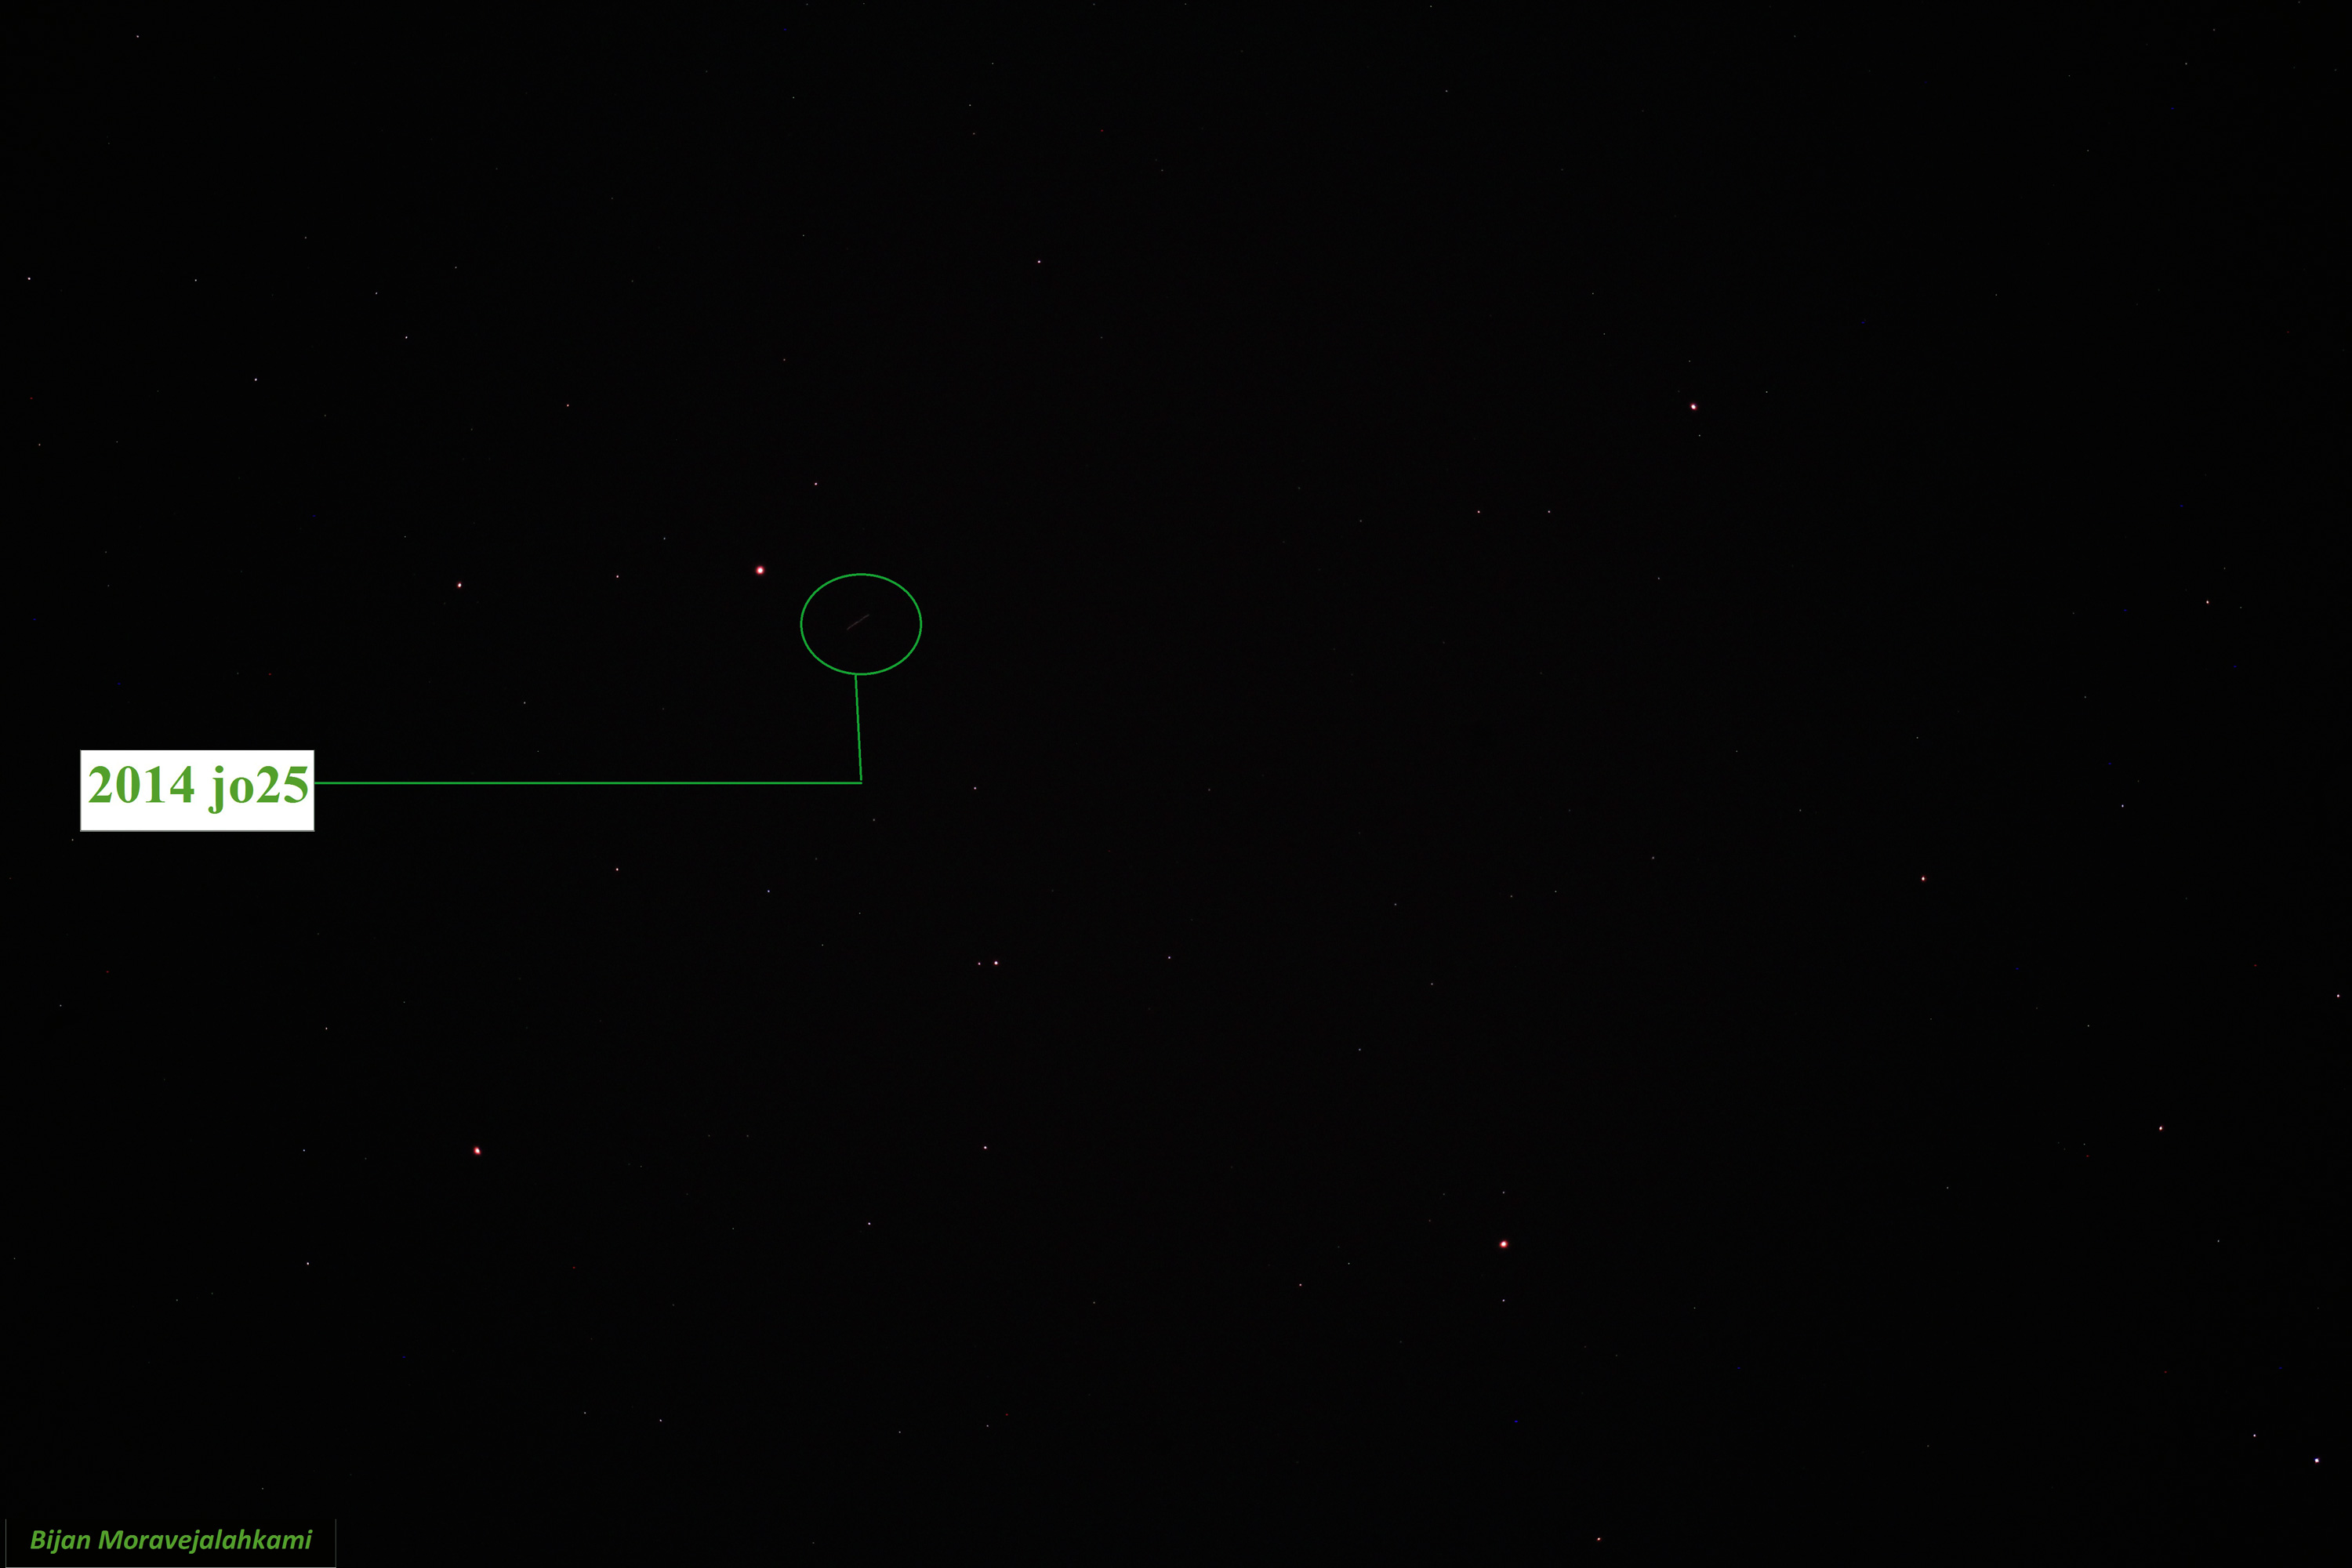 سیارک jo25 2014